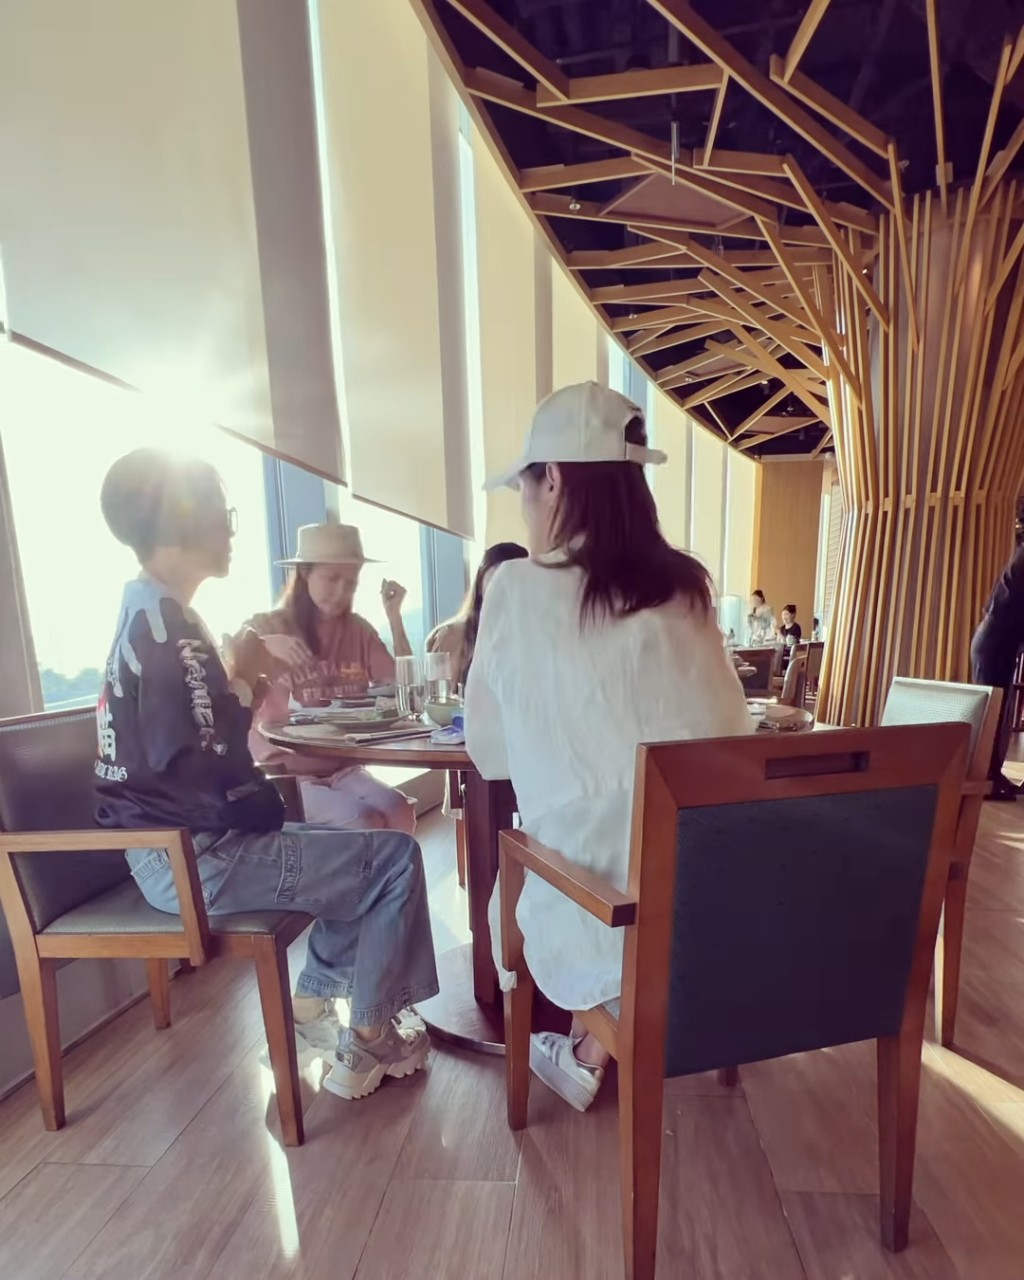 伍咏薇、梁嘉琪及简慕华相约食饭。